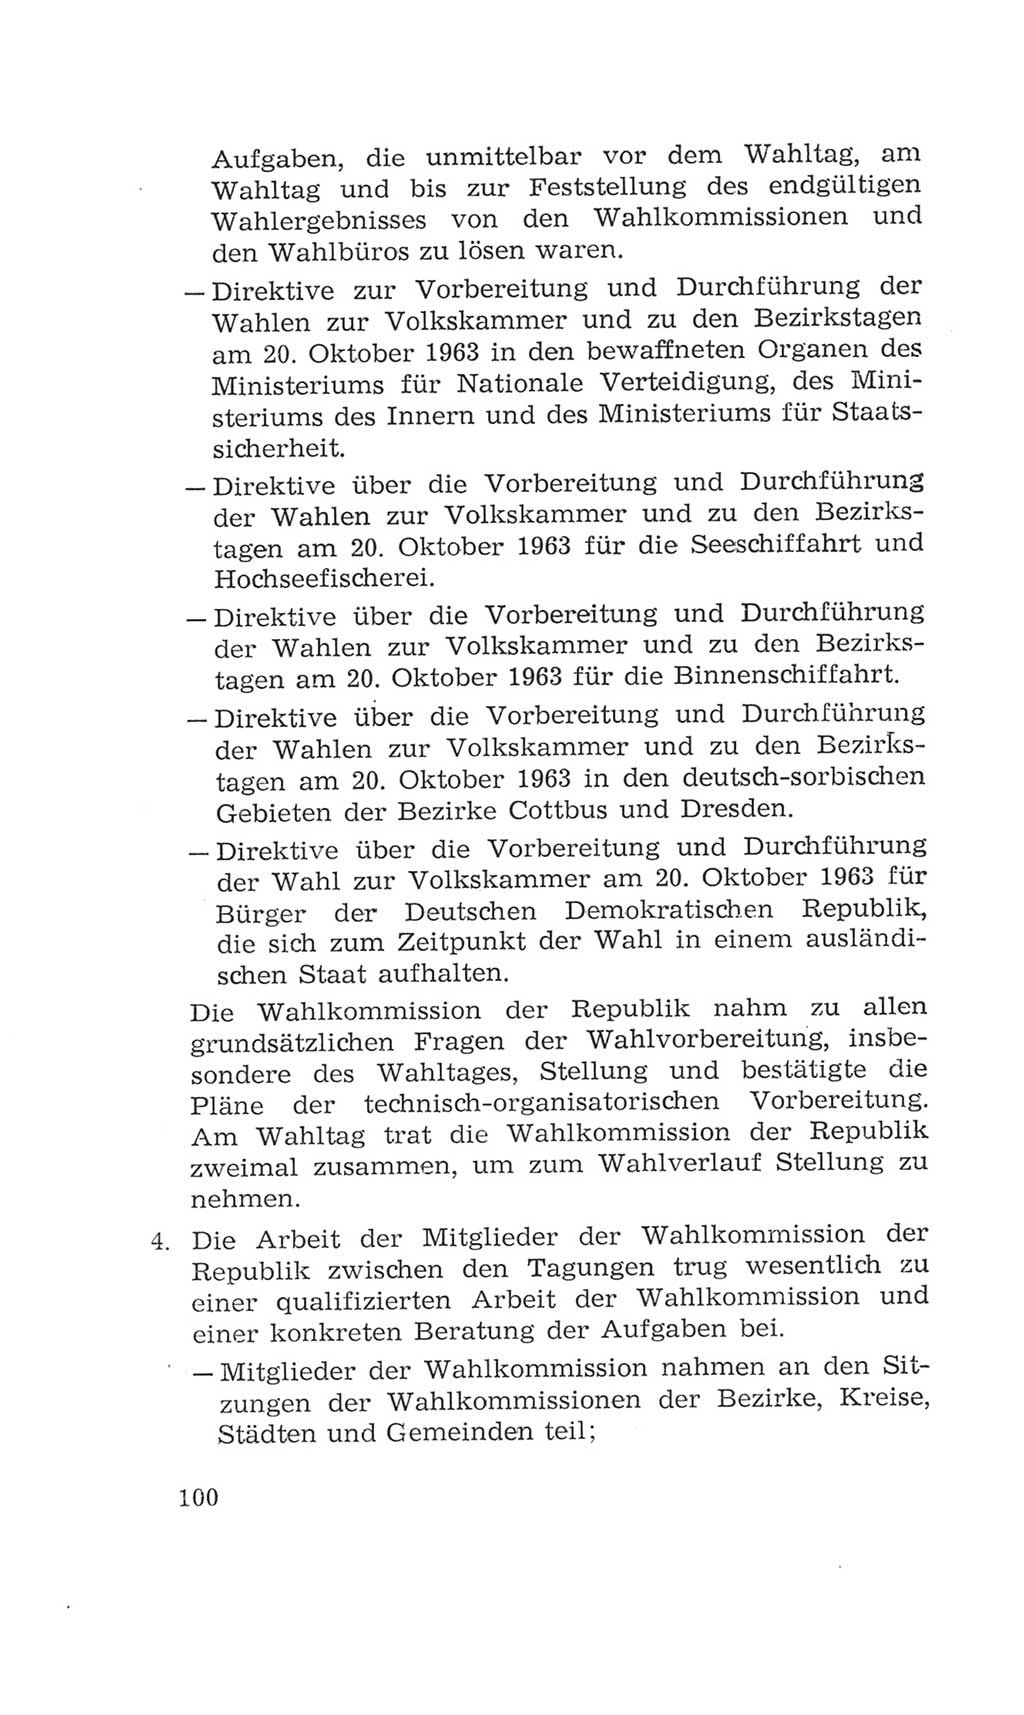 Volkskammer (VK) der Deutschen Demokratischen Republik (DDR), 4. Wahlperiode 1963-1967, Seite 100 (VK. DDR 4. WP. 1963-1967, S. 100)